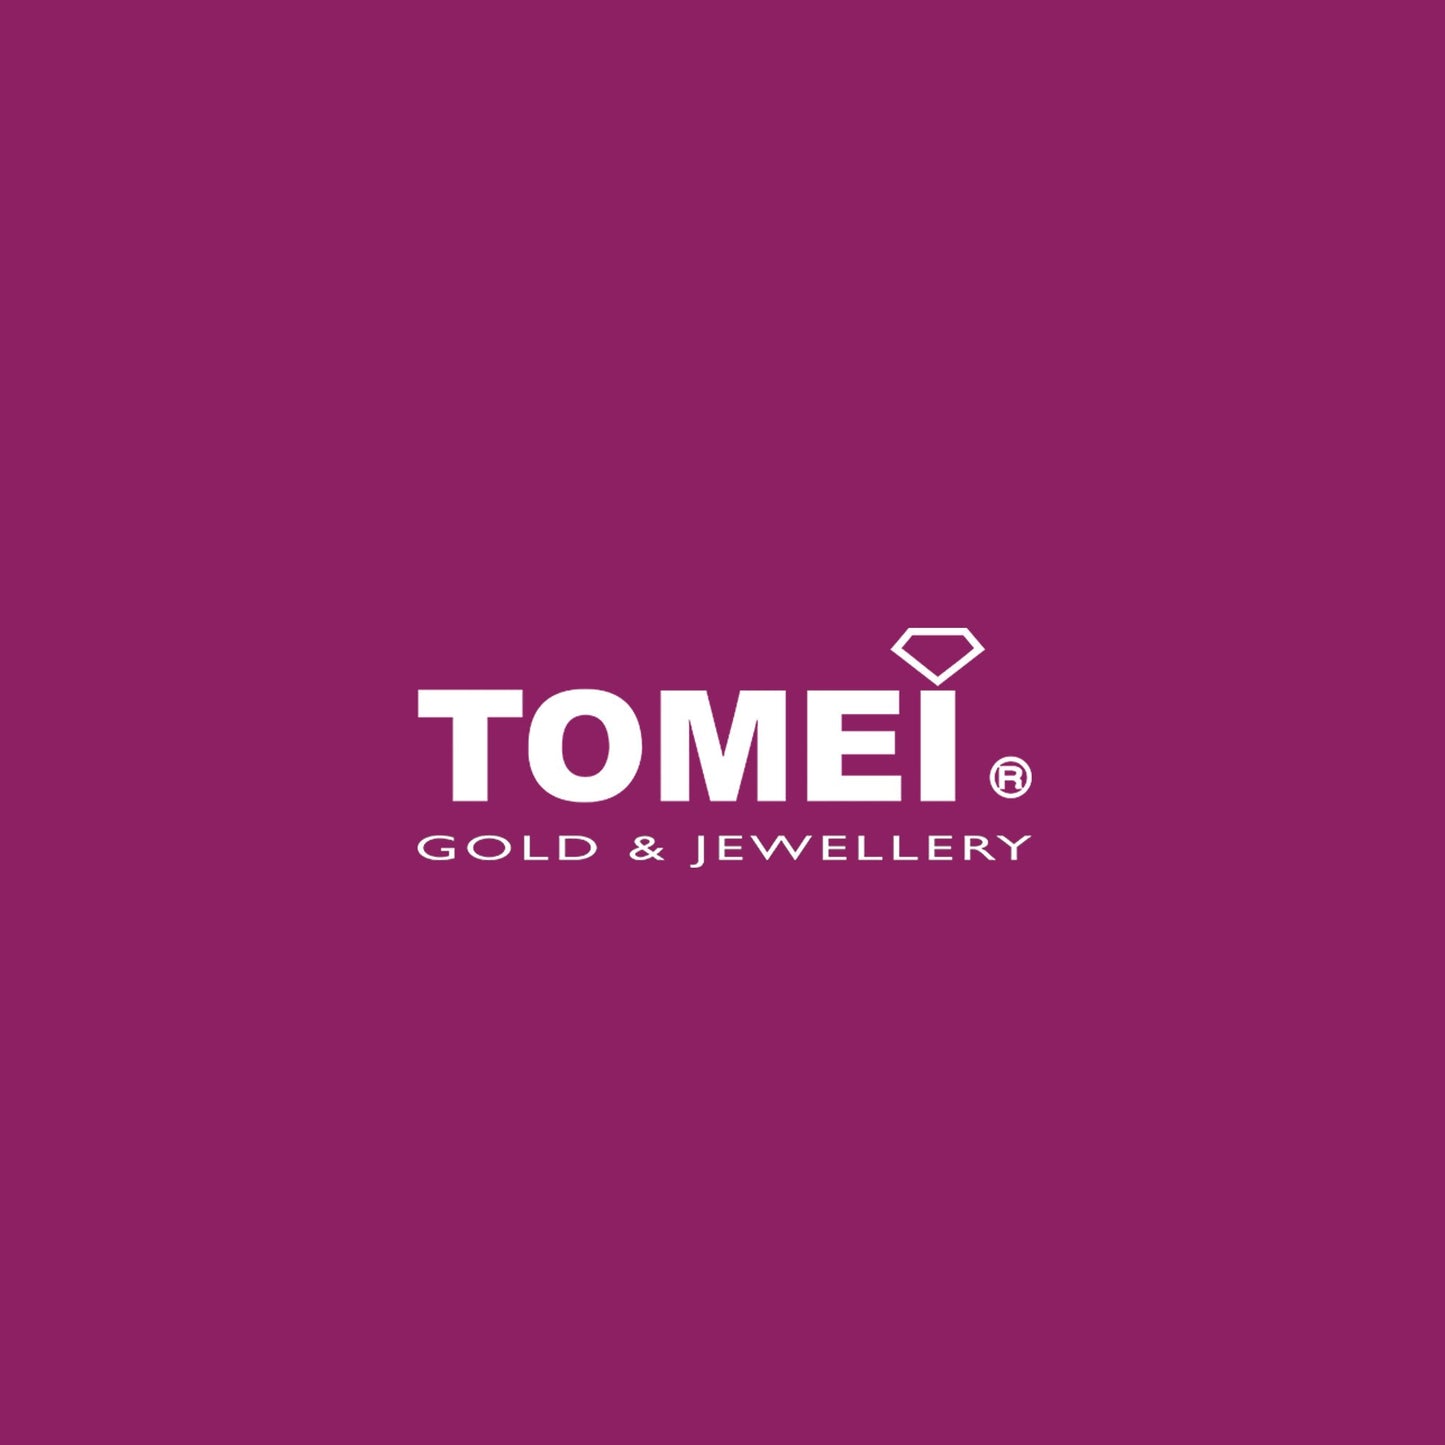 TOMEI White Christmas Collection Diamond Pendant Set, White Gold 585